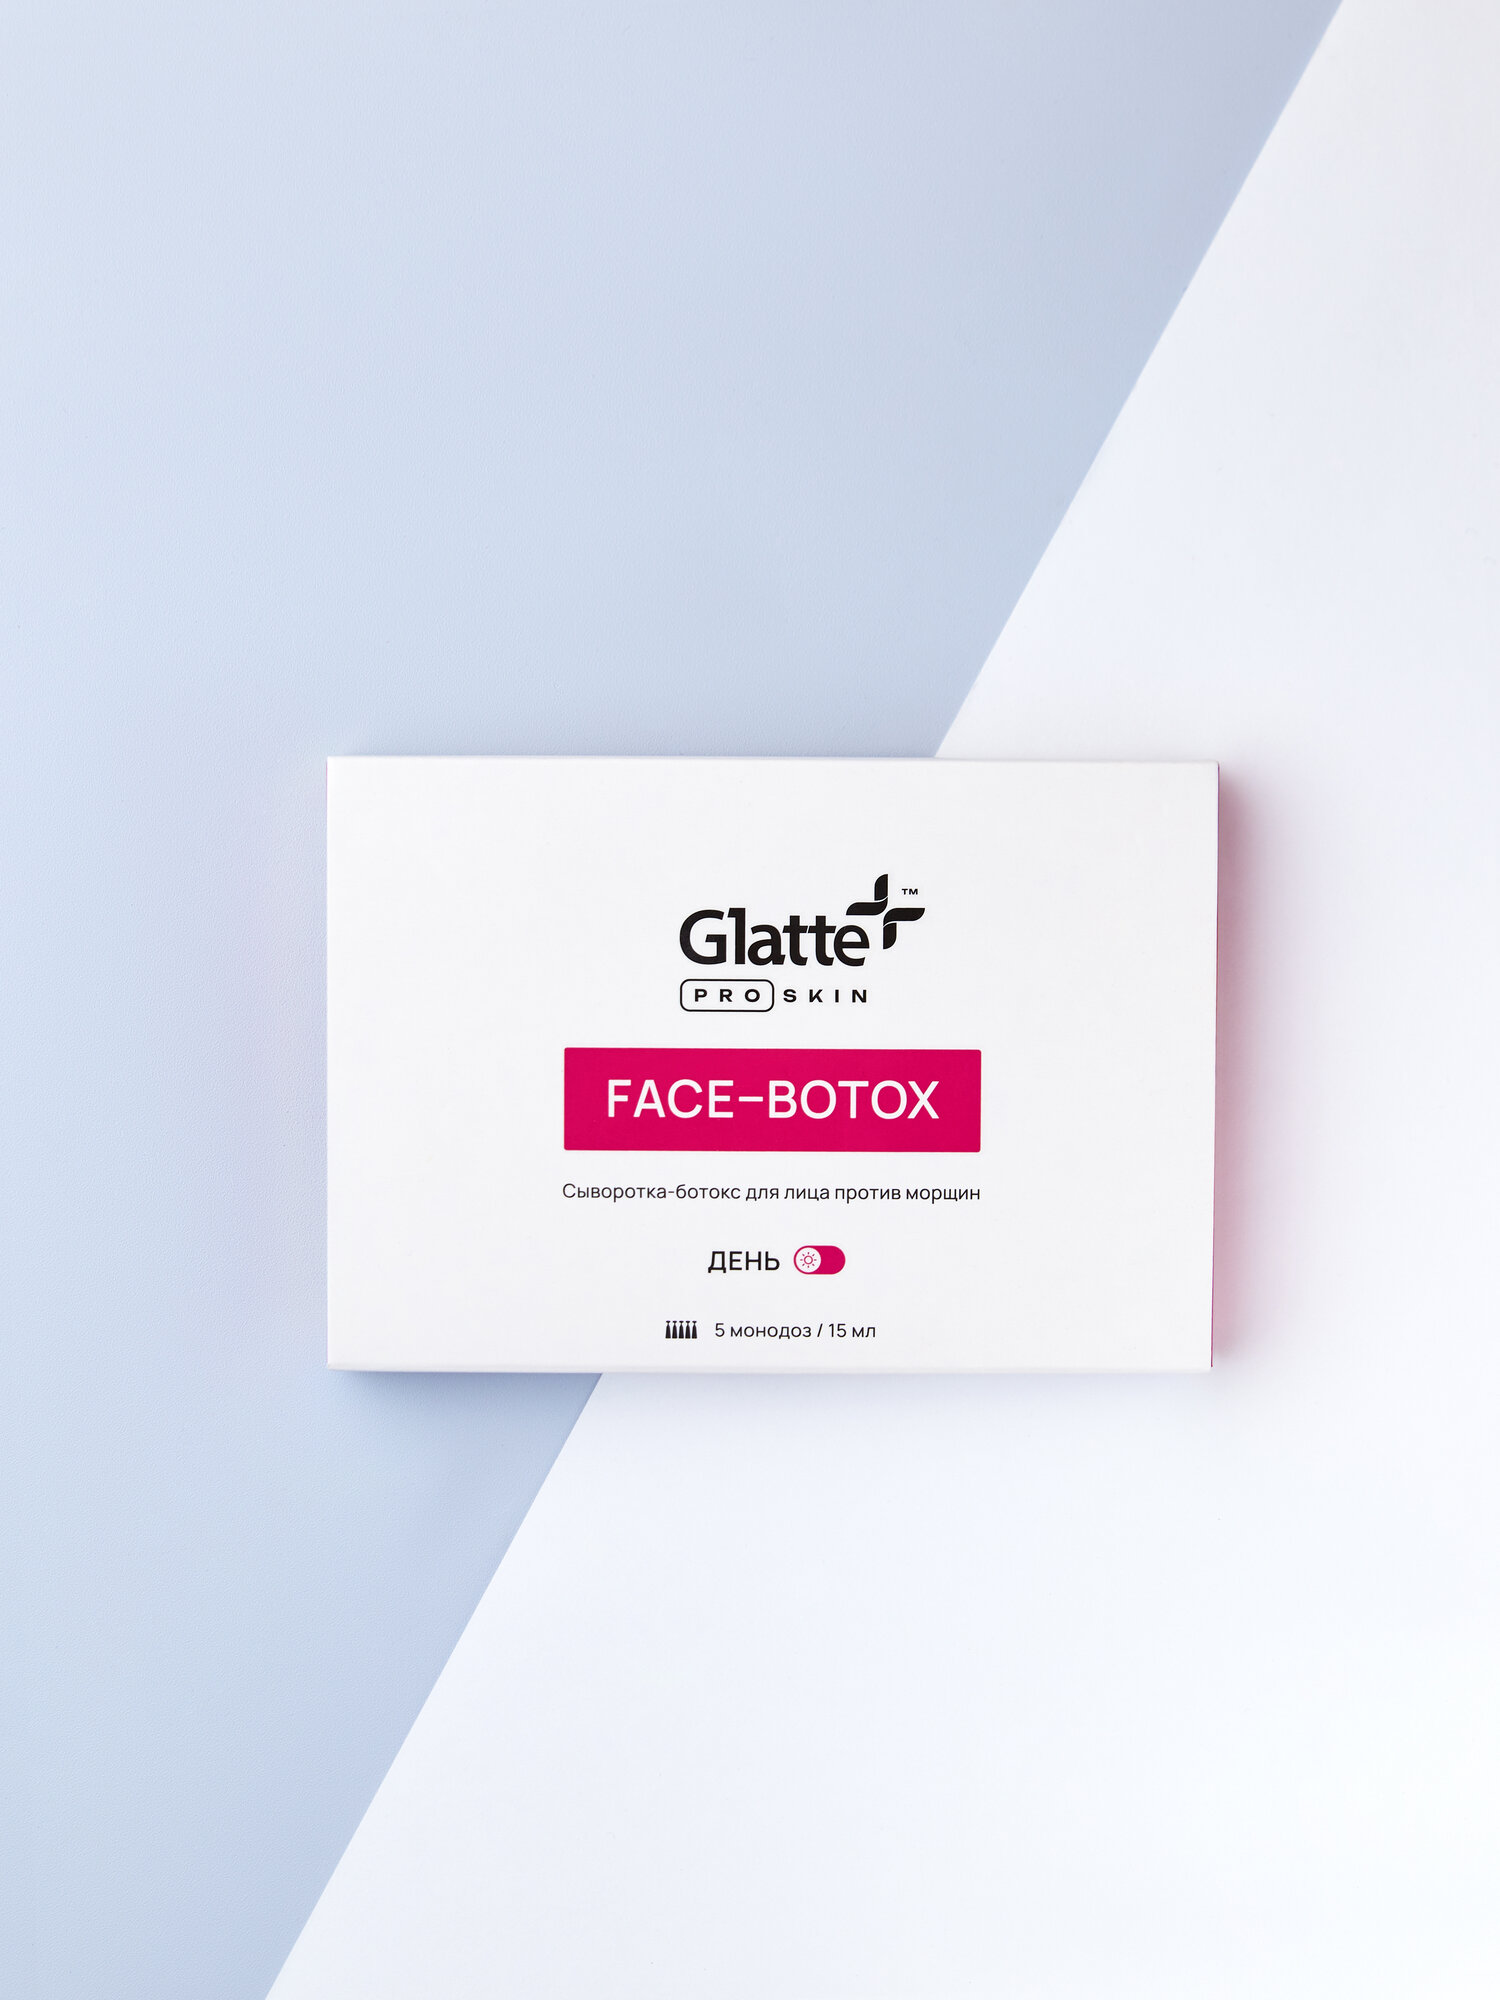 Сыворотка для лица Glatte антивозрастная дневная oт морщин, ботокс эффект, 15 мл